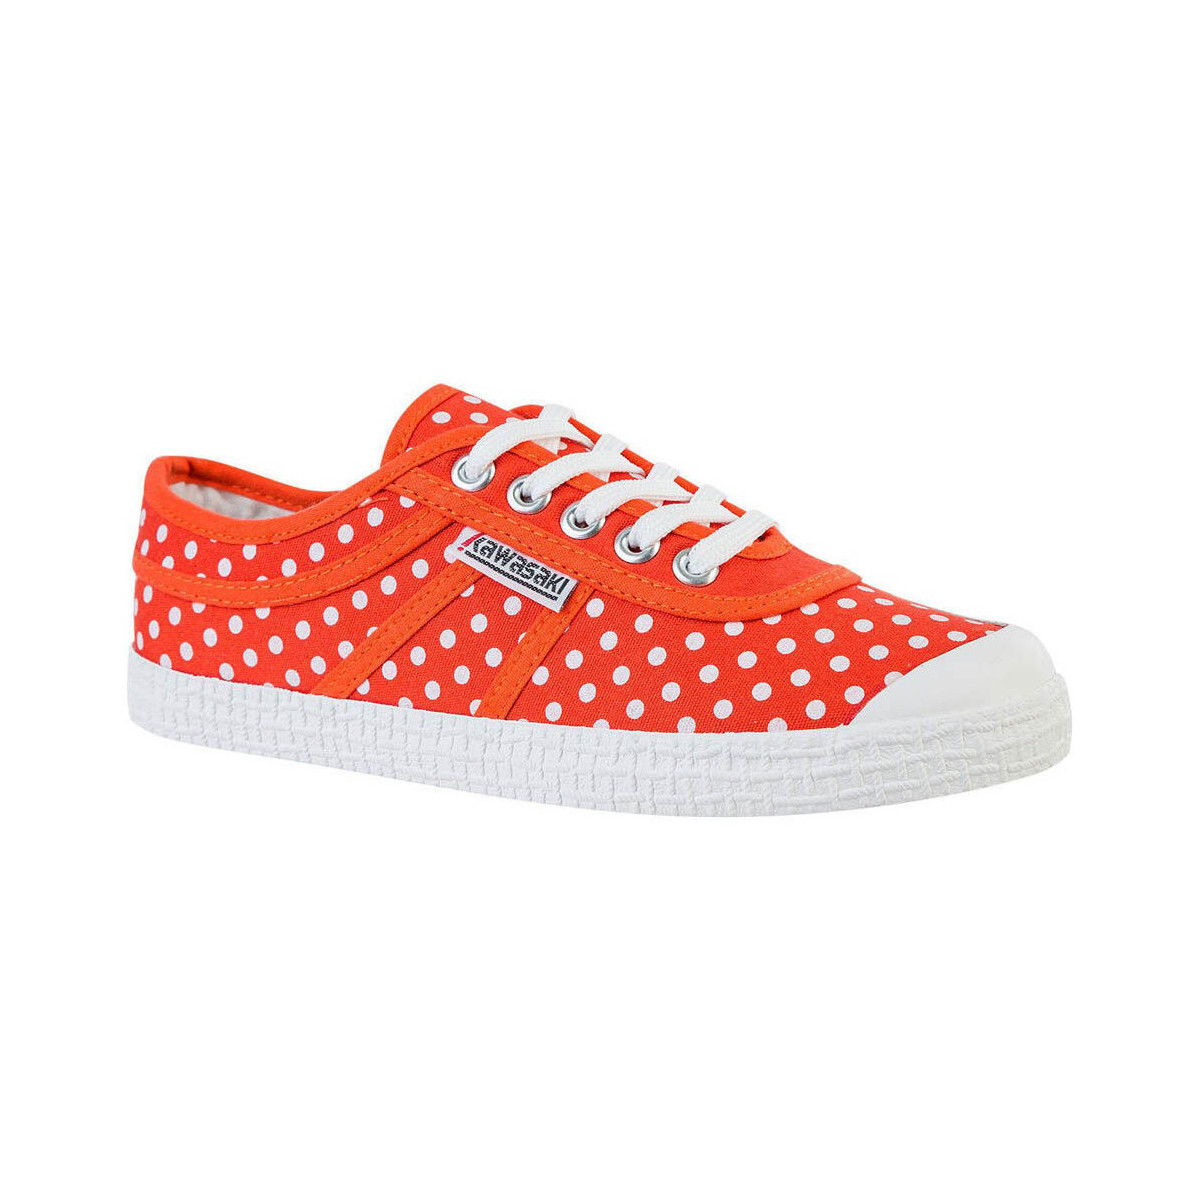 Παπούτσια Γυναίκα Sneakers Kawasaki Polka Canvas Shoe K202421 5030 Cherry Tomato Red